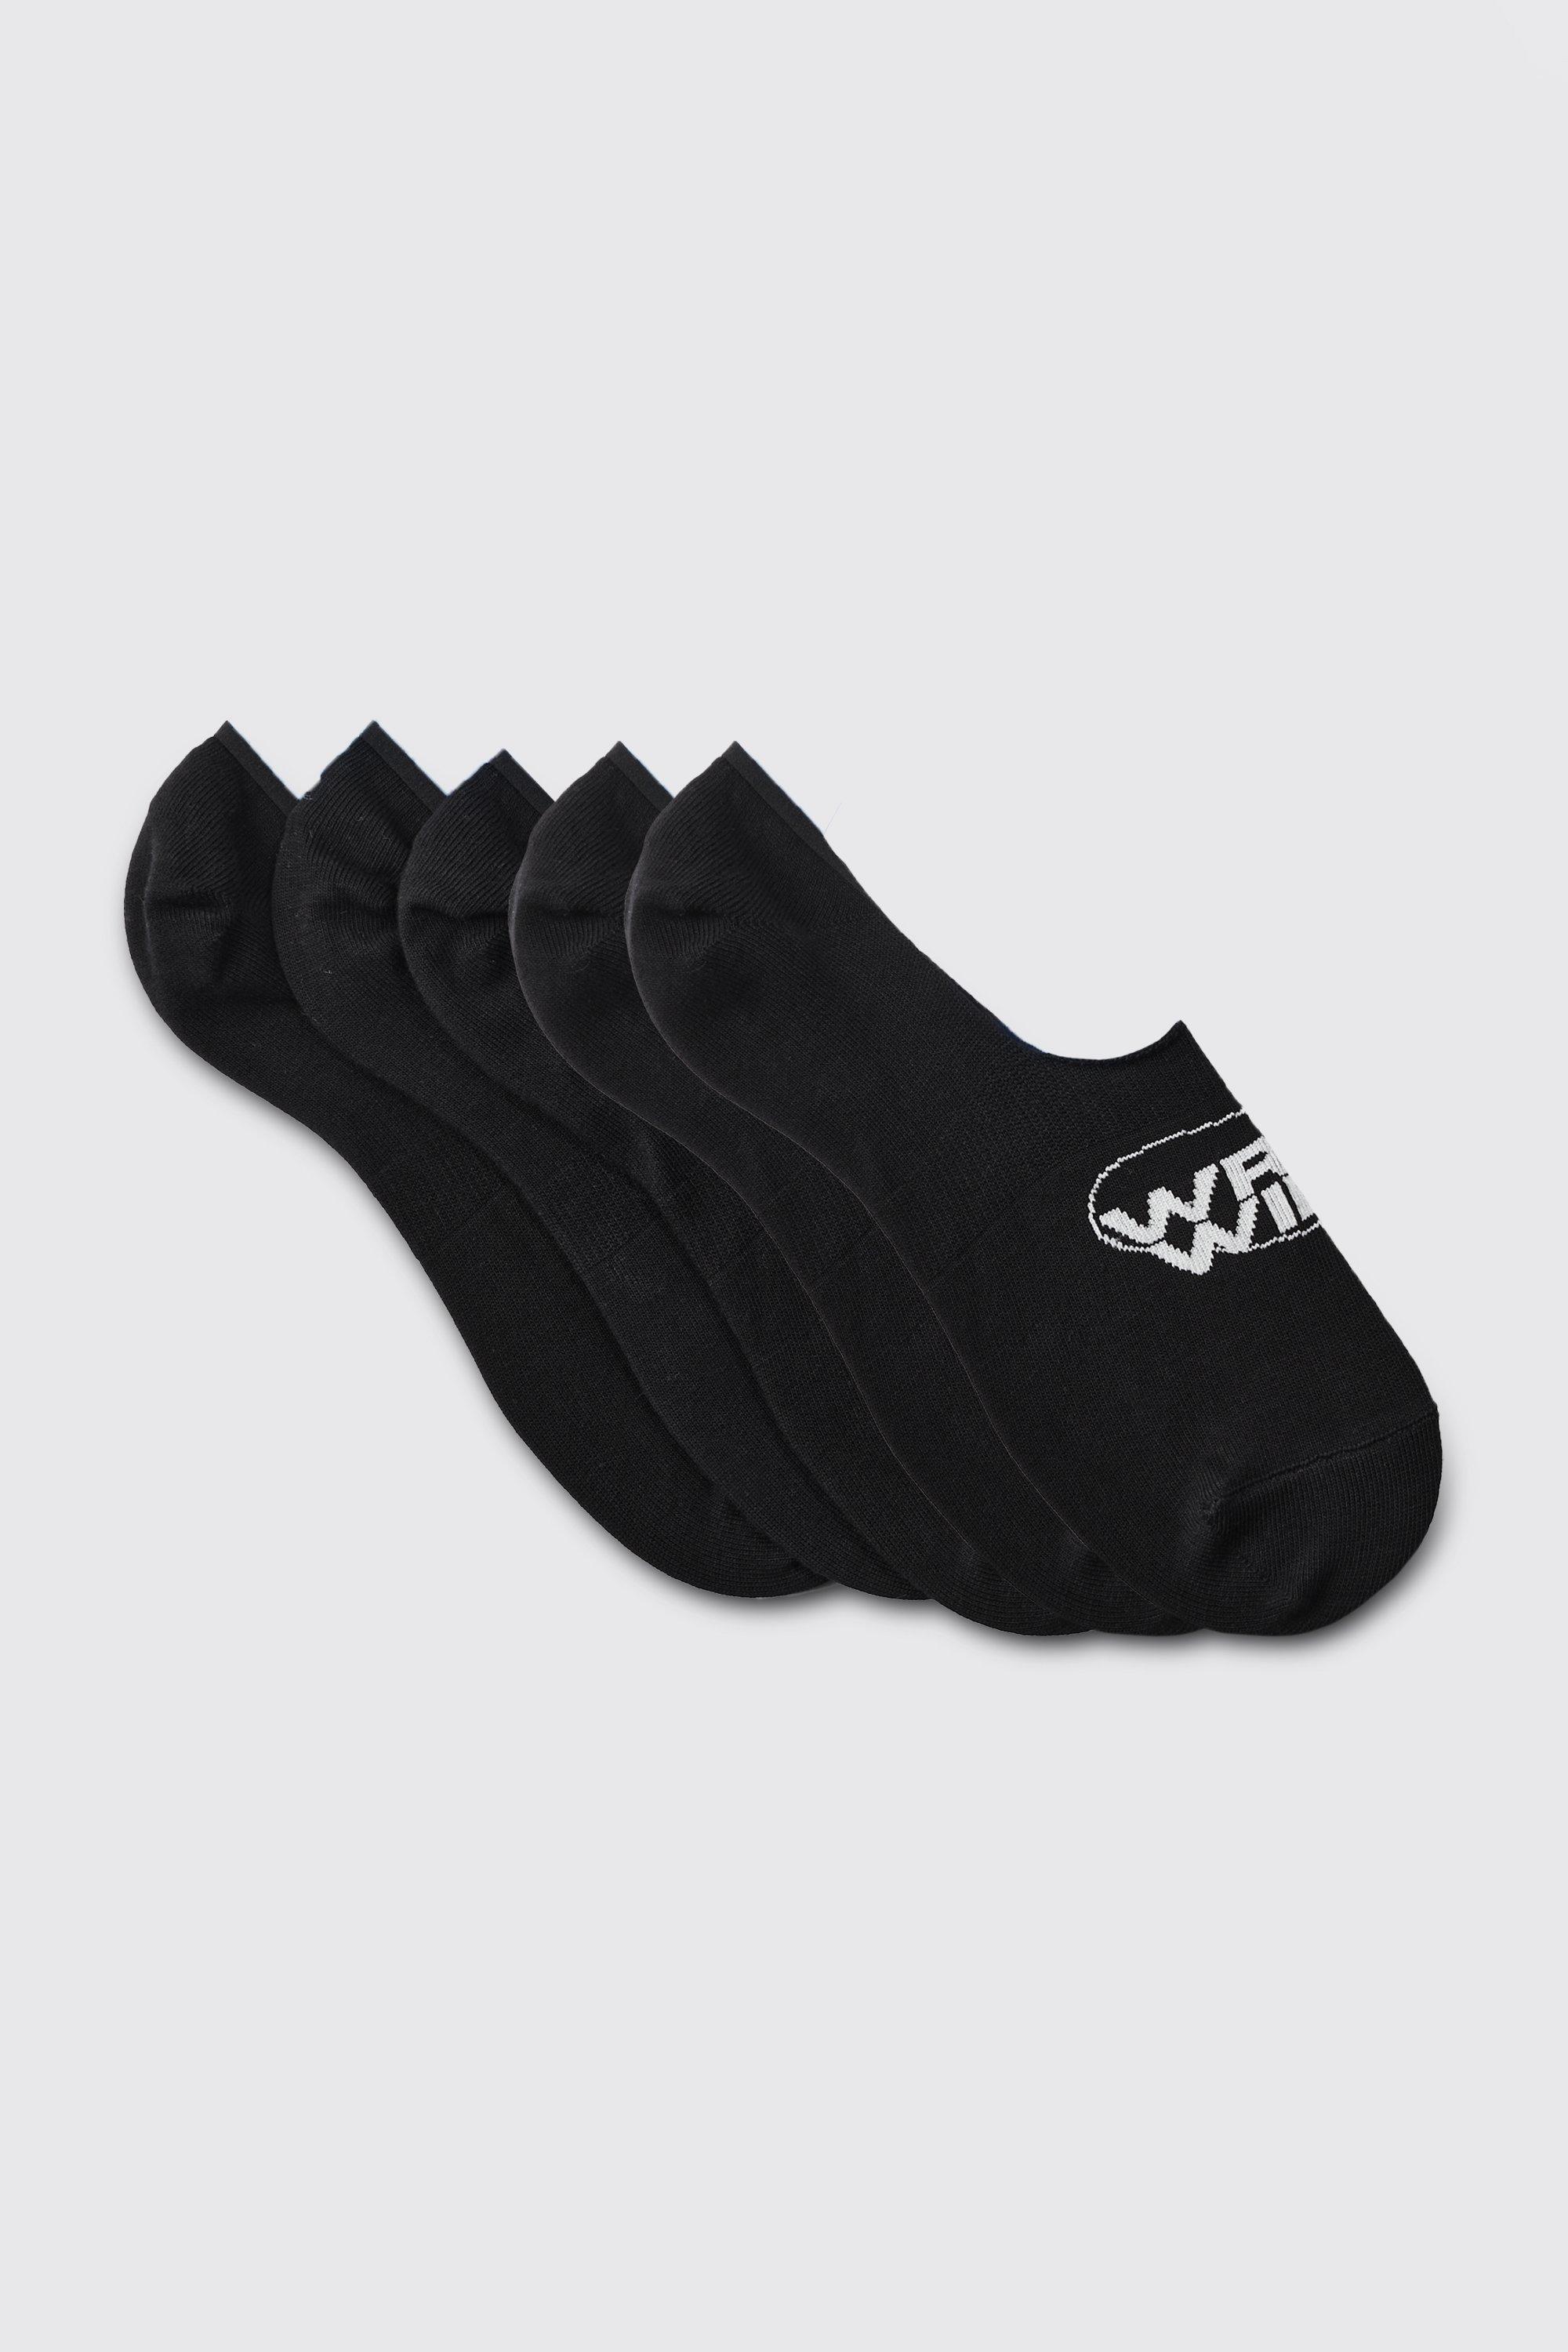 Mens Black 3 Pack Worldwide Logo Invisible Socks, Black